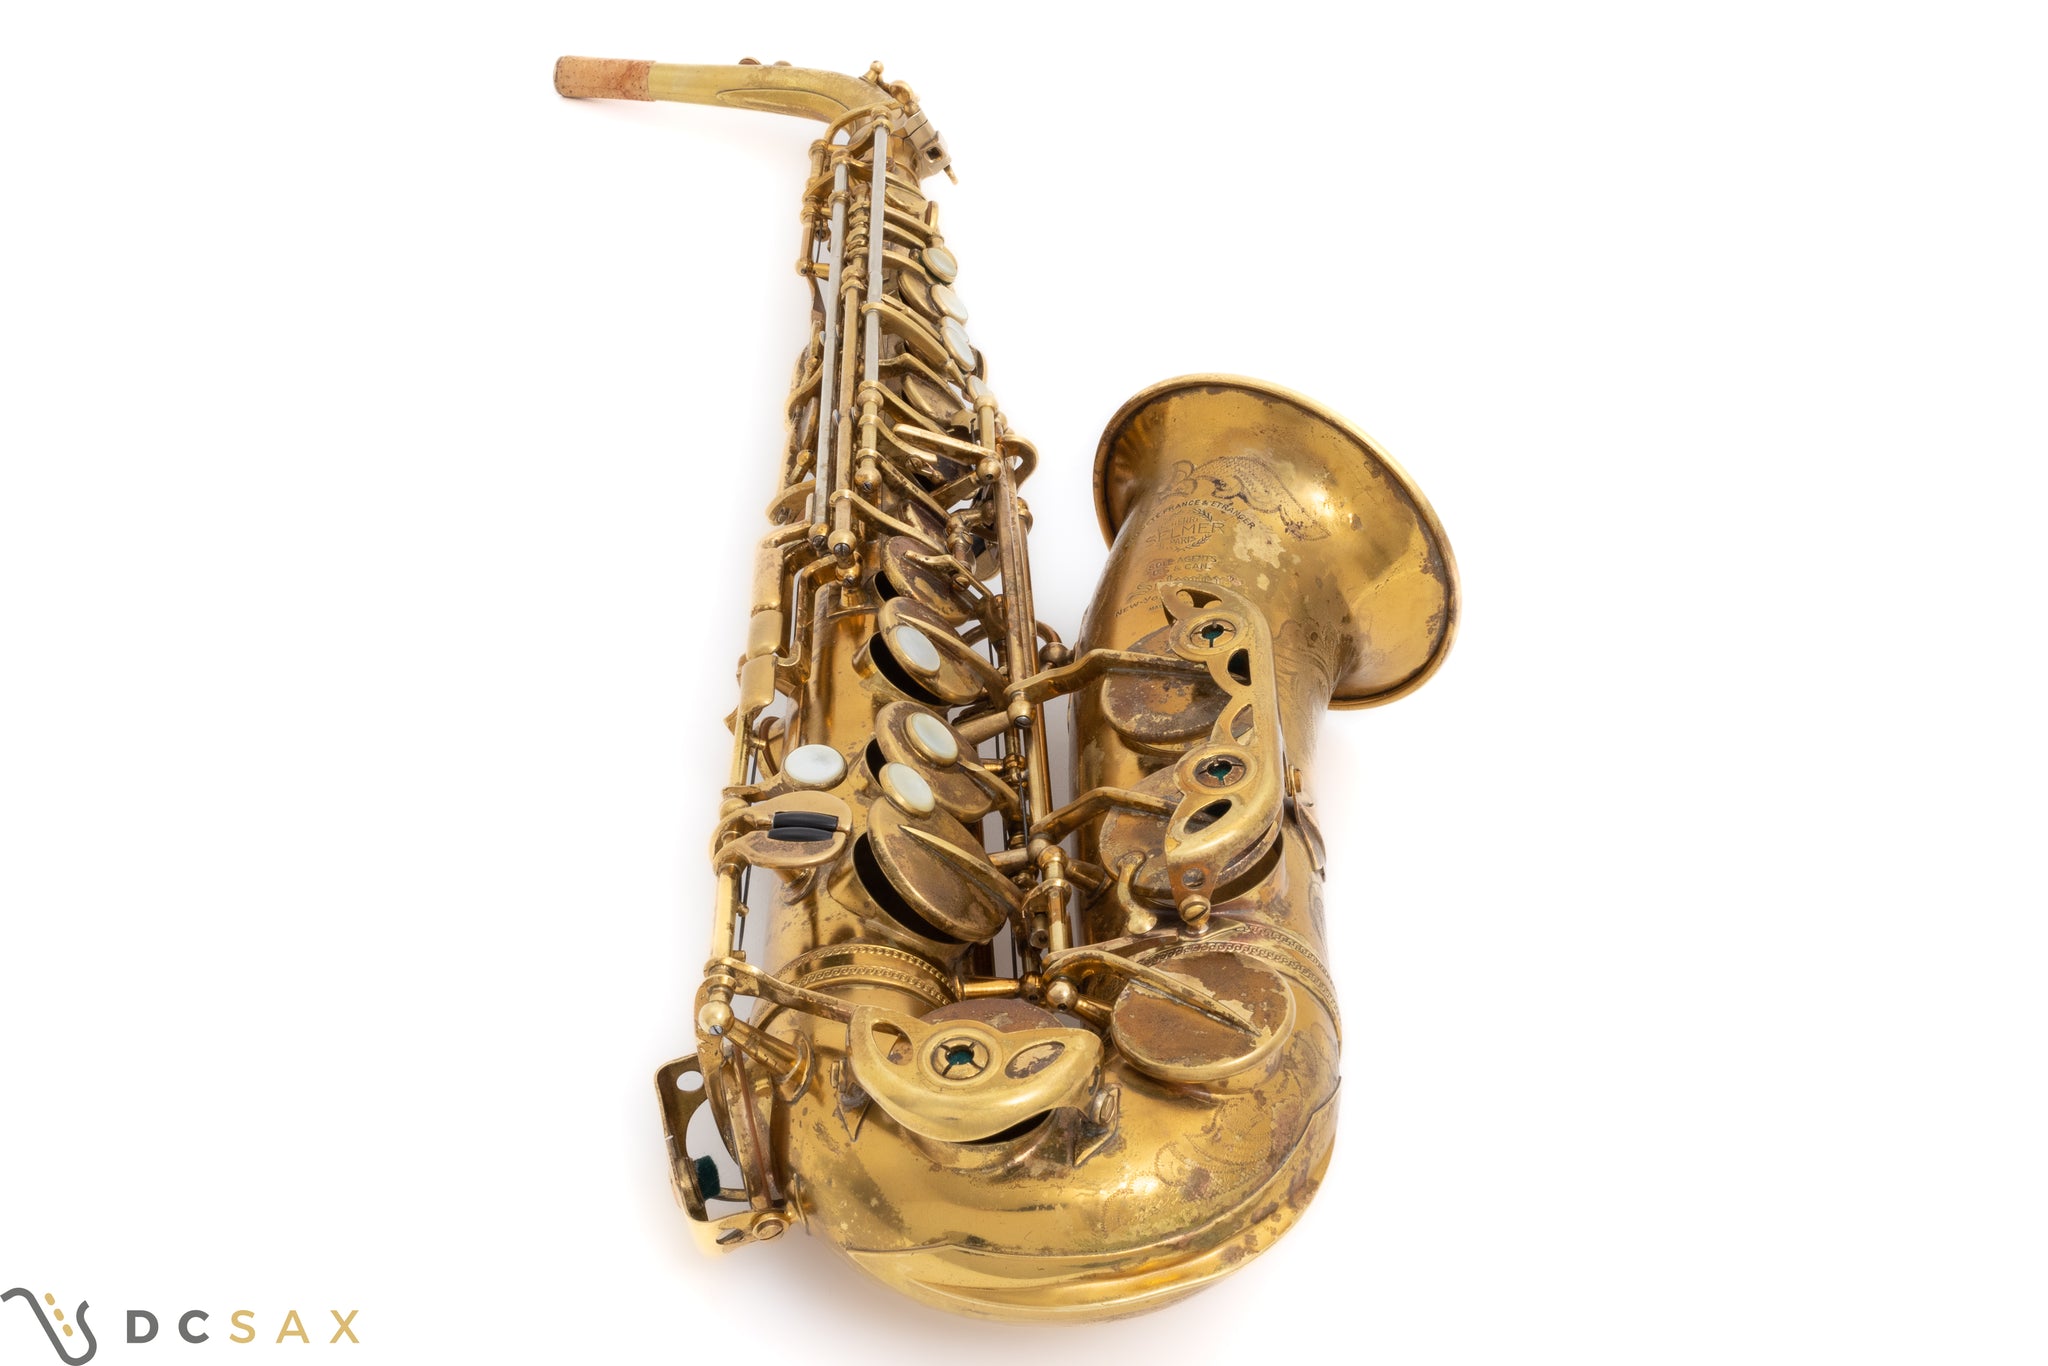 1953 52,xxx Selmer Super Balanced Action Alto Saxophone, Fresh Overhaul, Original Lacquer, Video